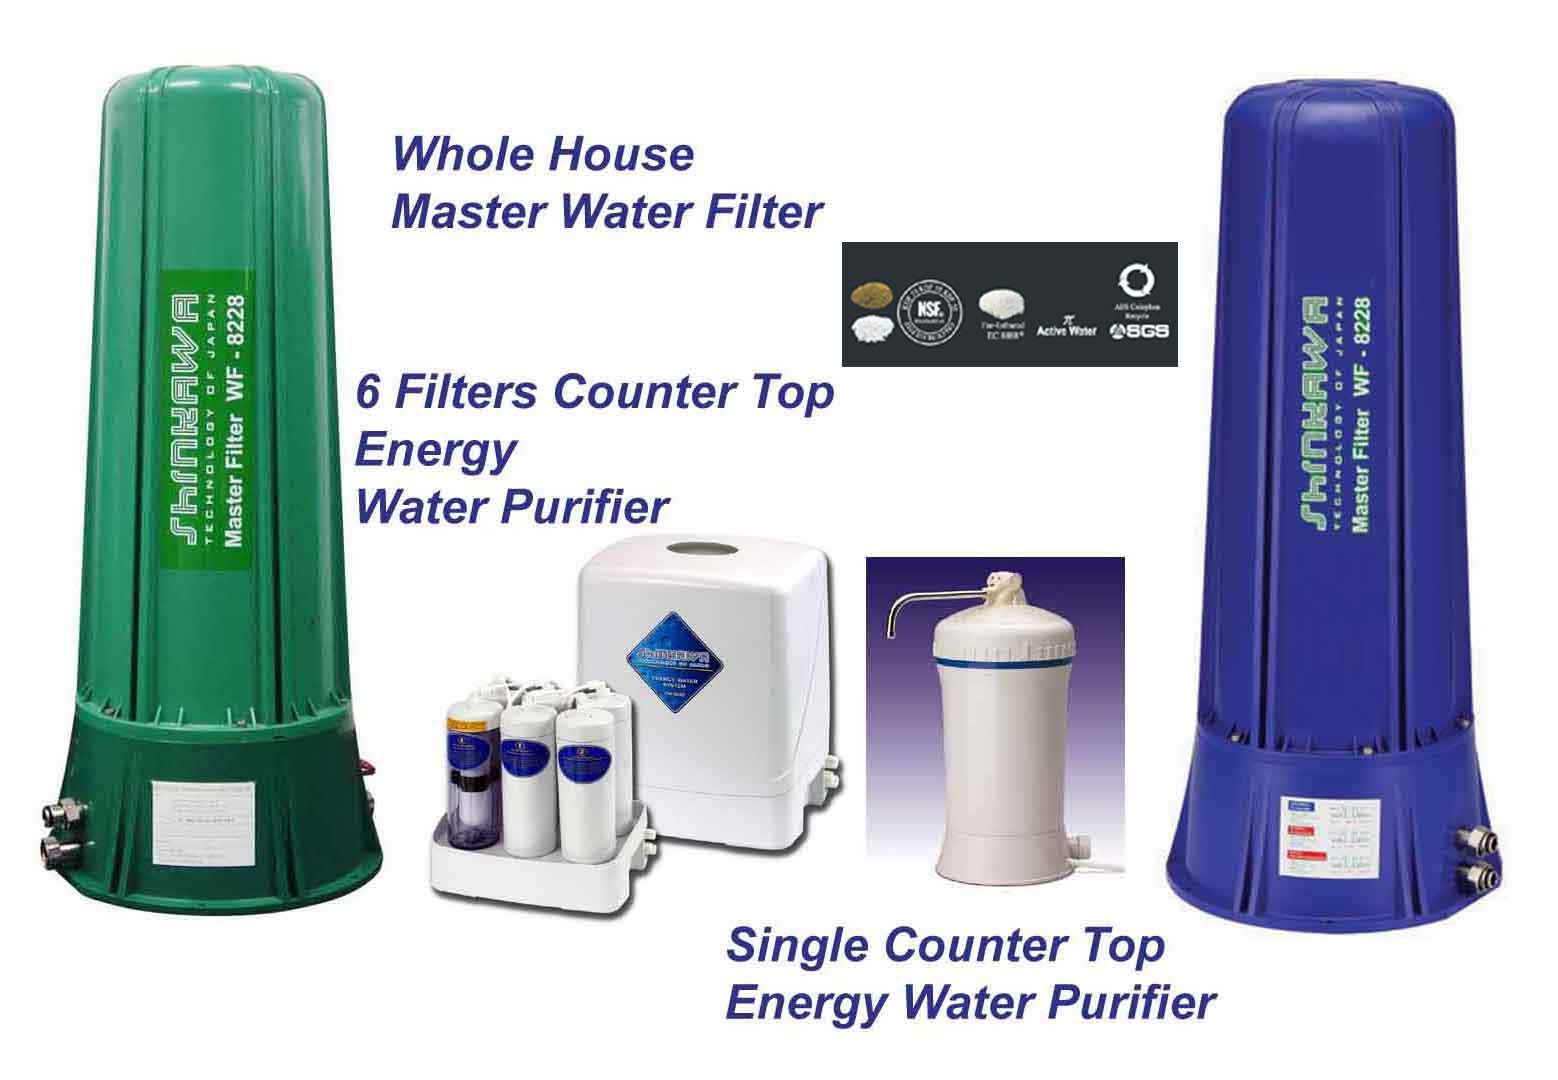  Countertop Water Purifier & Whole House Master Water Filter (Прилавок Water Purifier & Всего Доме освоения водных фильтров)